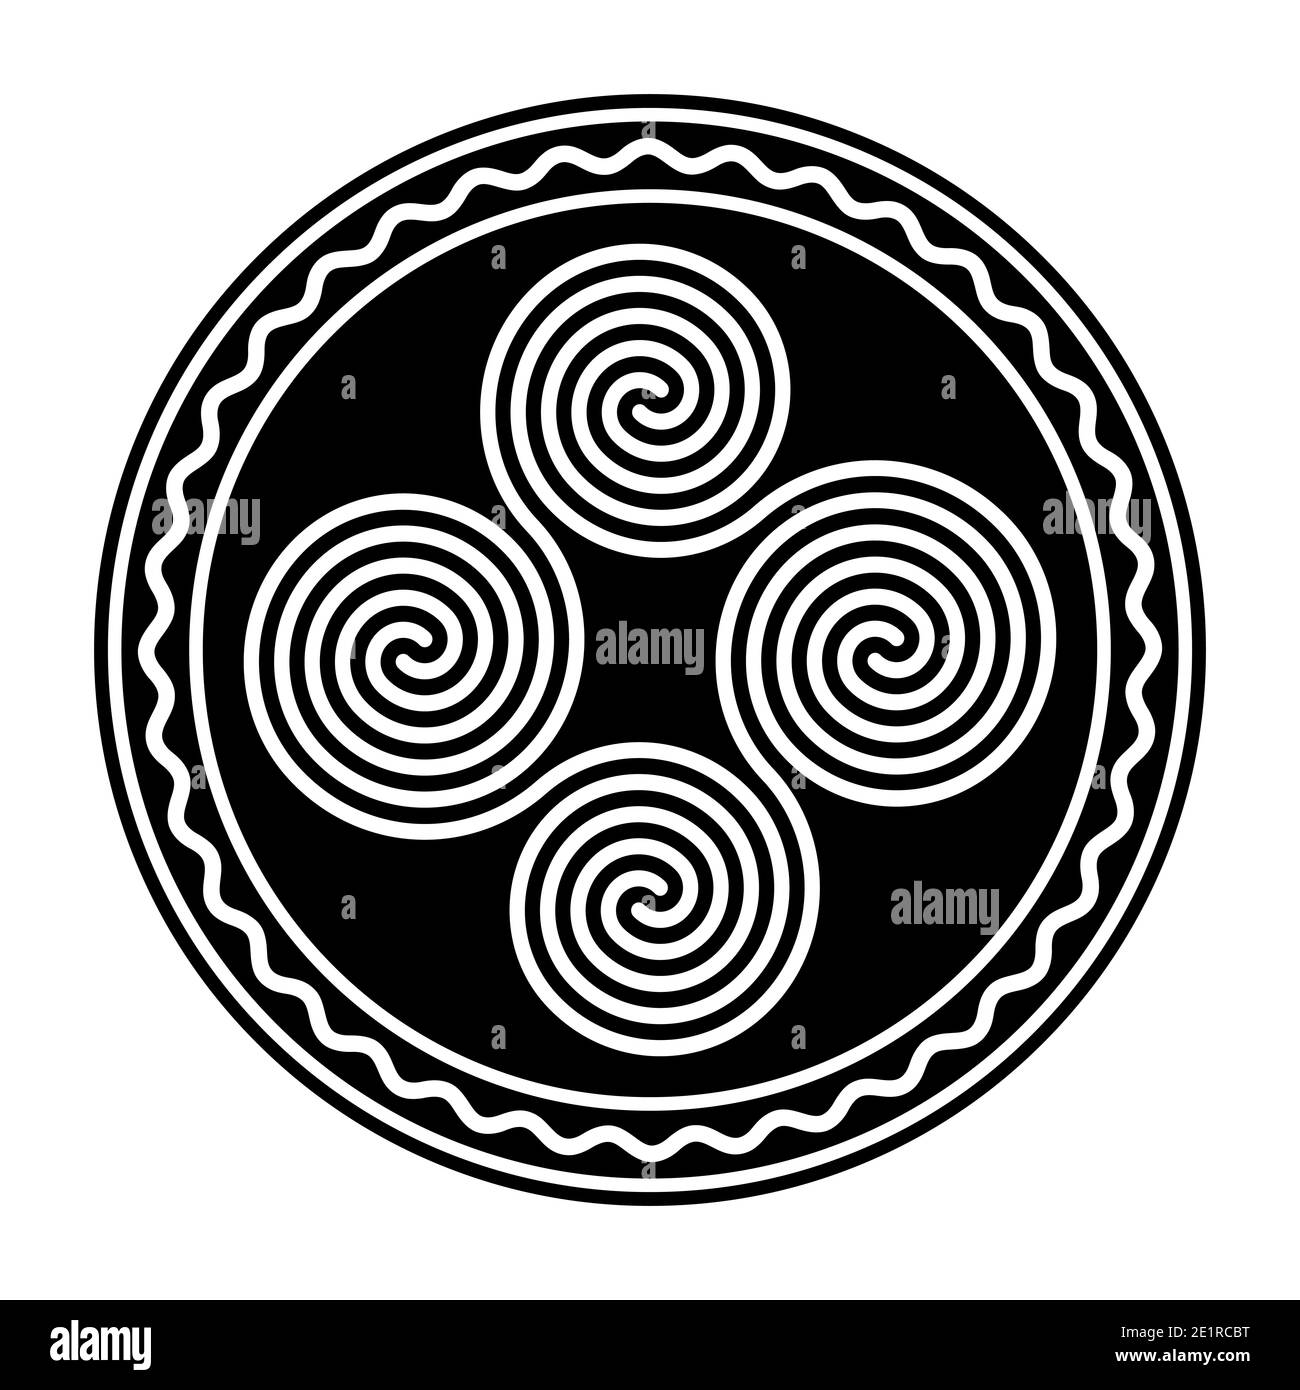 Quatre spirales Celtic doubles connectées, dans un cadre circulaire avec une ligne ondulée blanche. Quadruplée, formée par quatre spirales archimédiennes interverrouillées. Banque D'Images